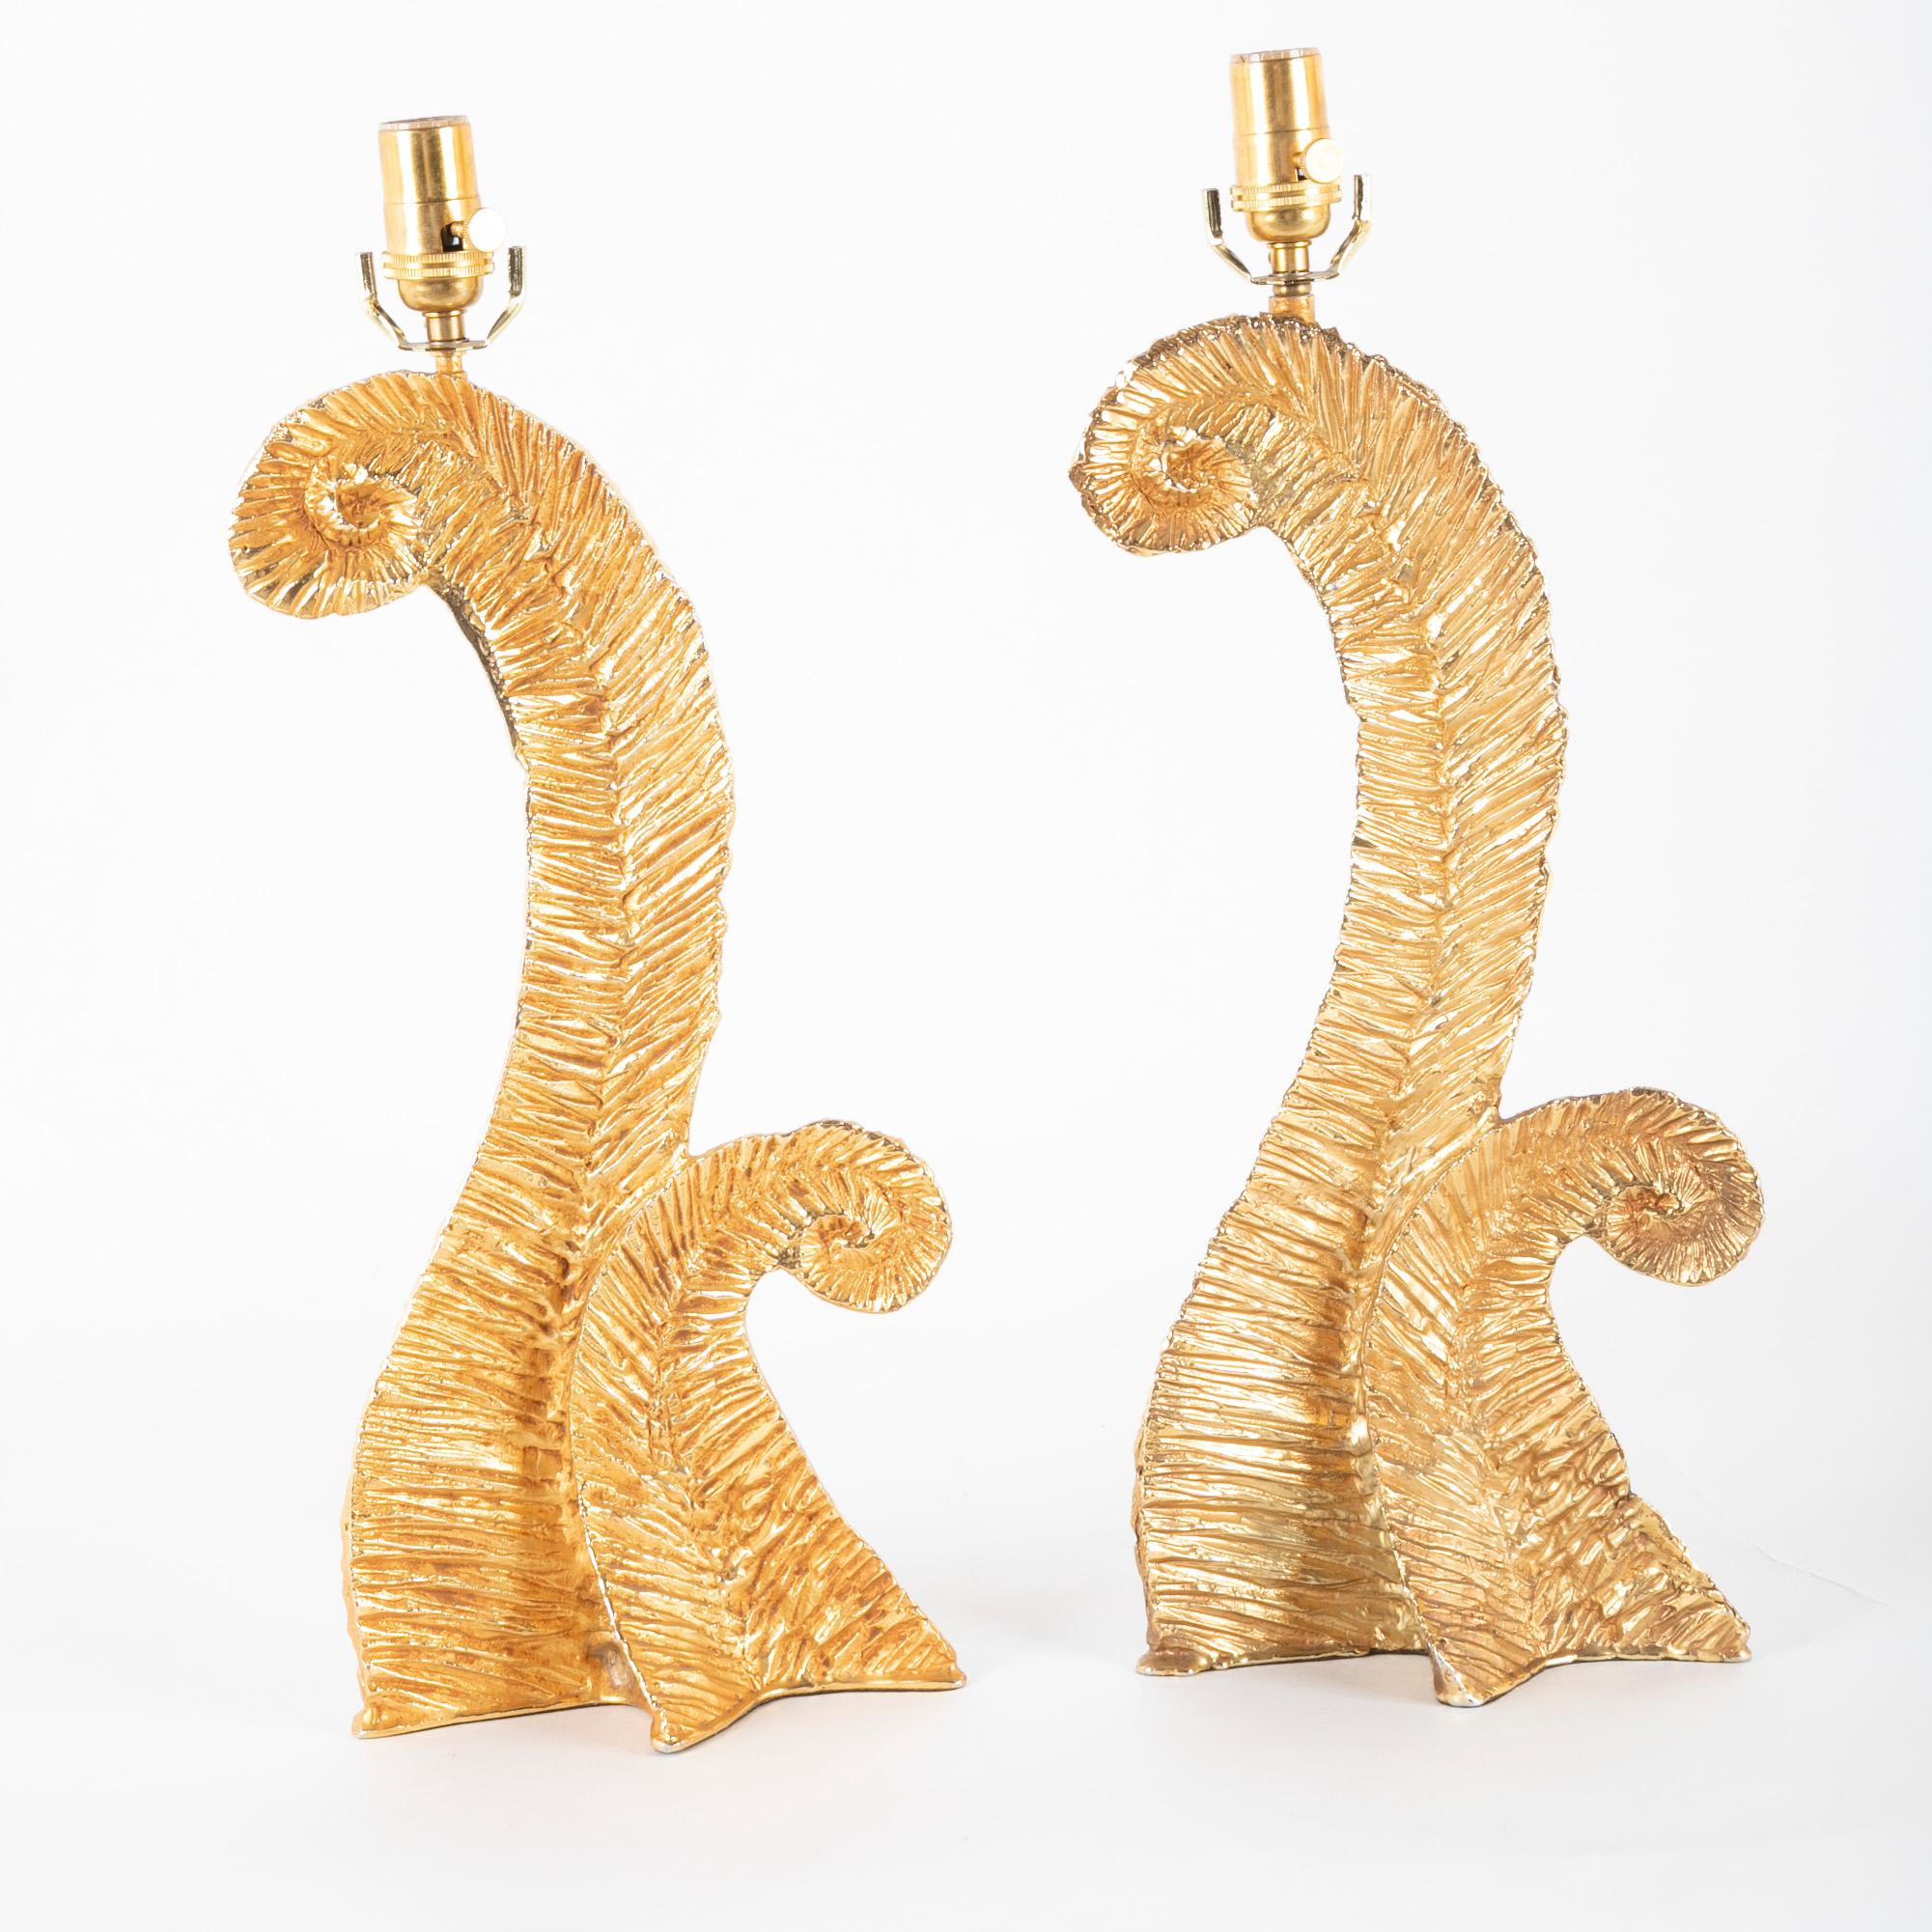 Ein Paar Lampen aus vergoldetem Metall, vermutlich von Fondica und entworfen von Pierre Casenove.